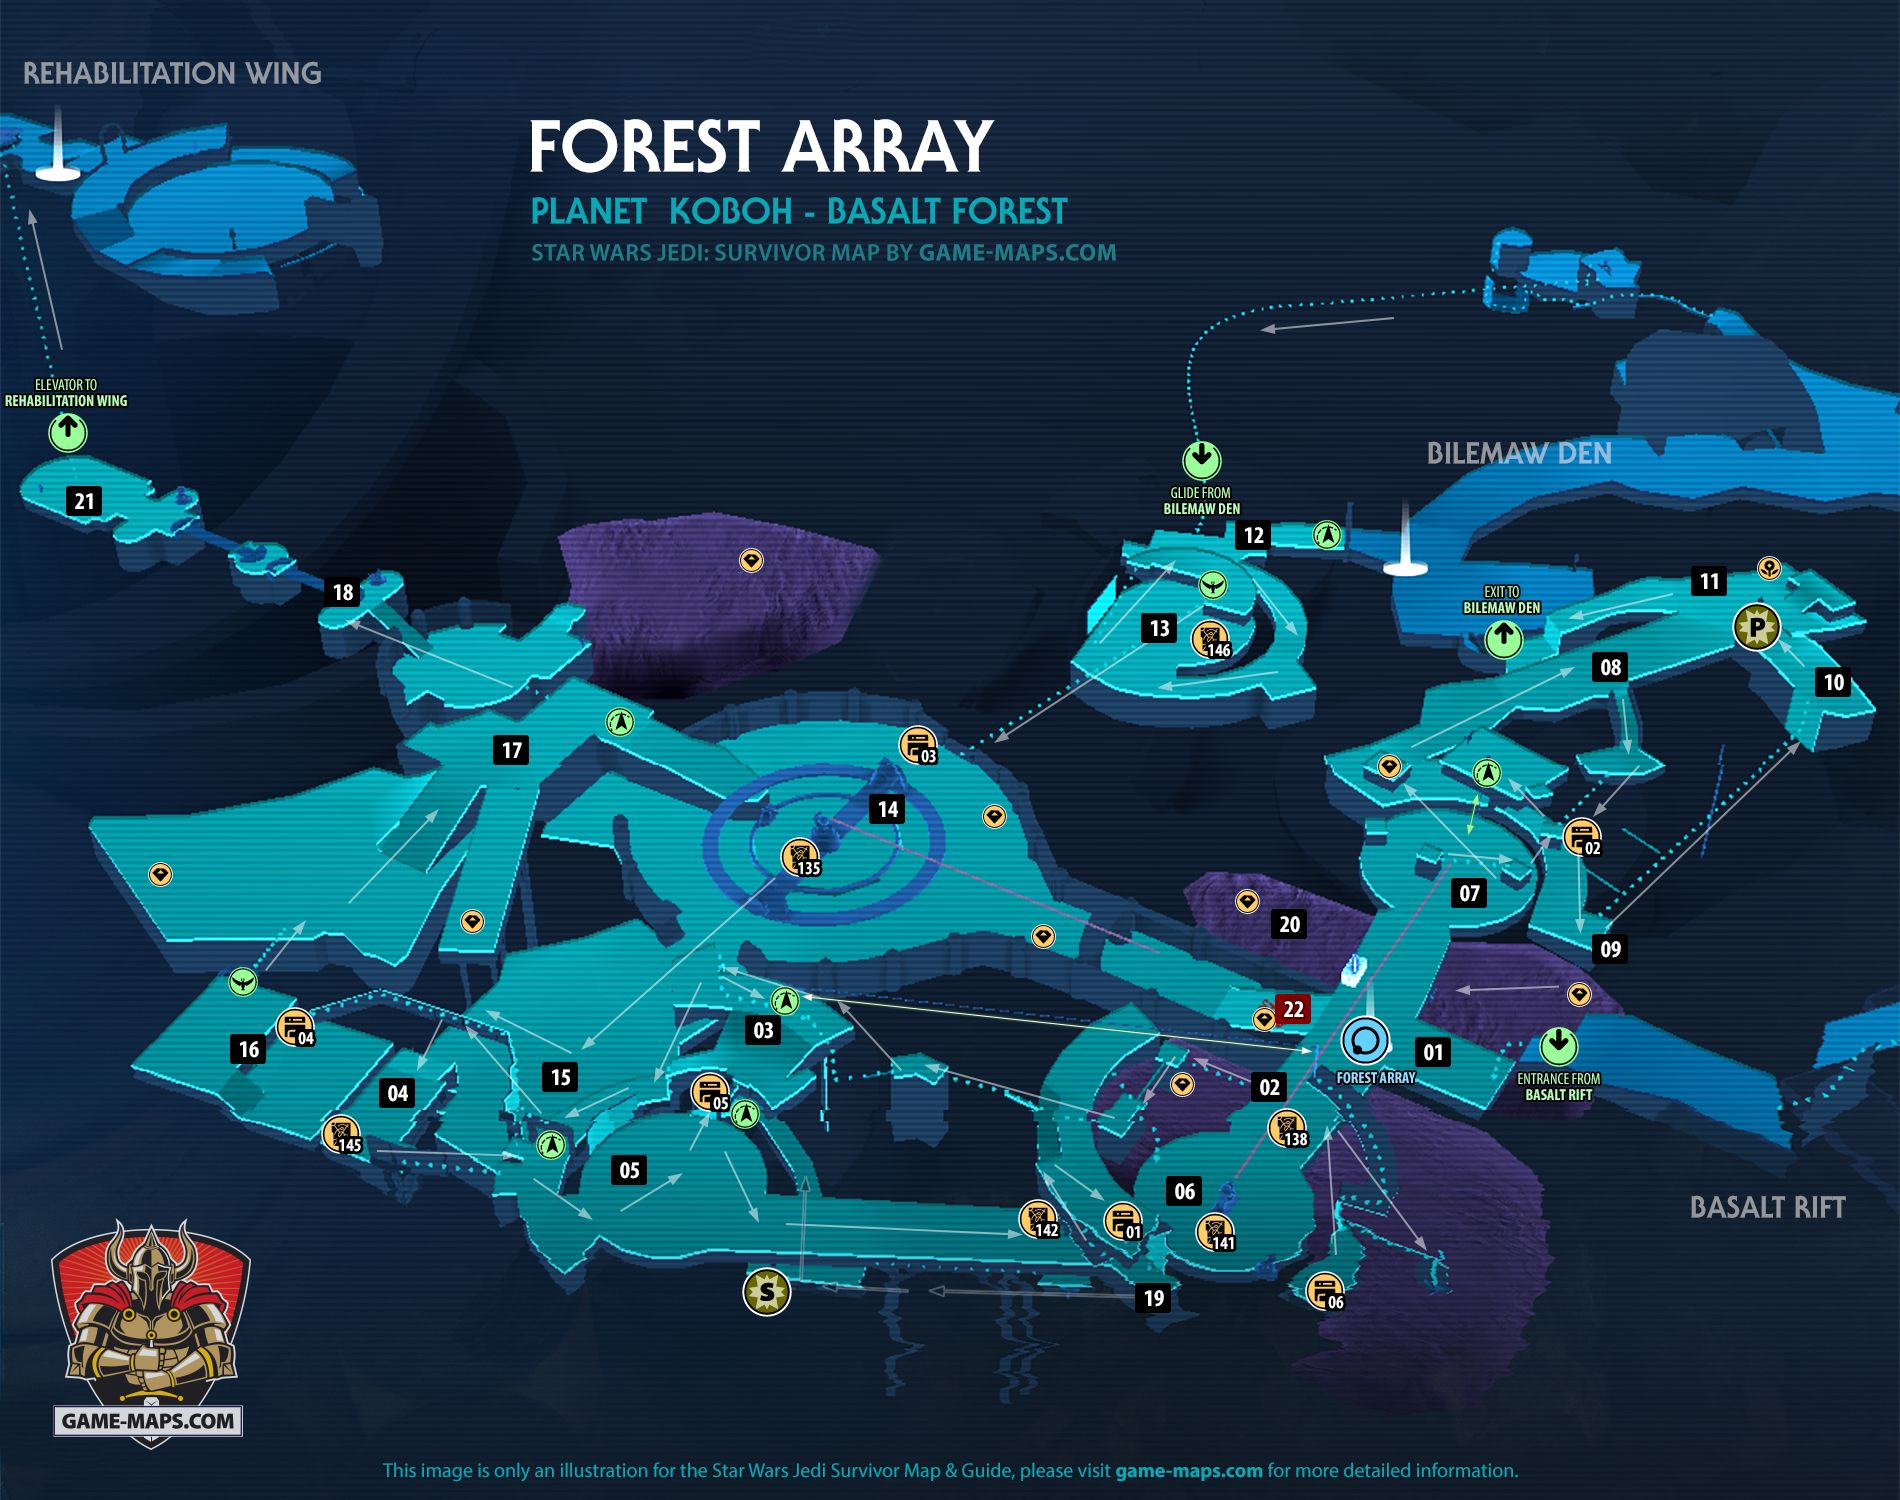 Forest Array Map Koboh Planet for Star Wars Jedi Survivor